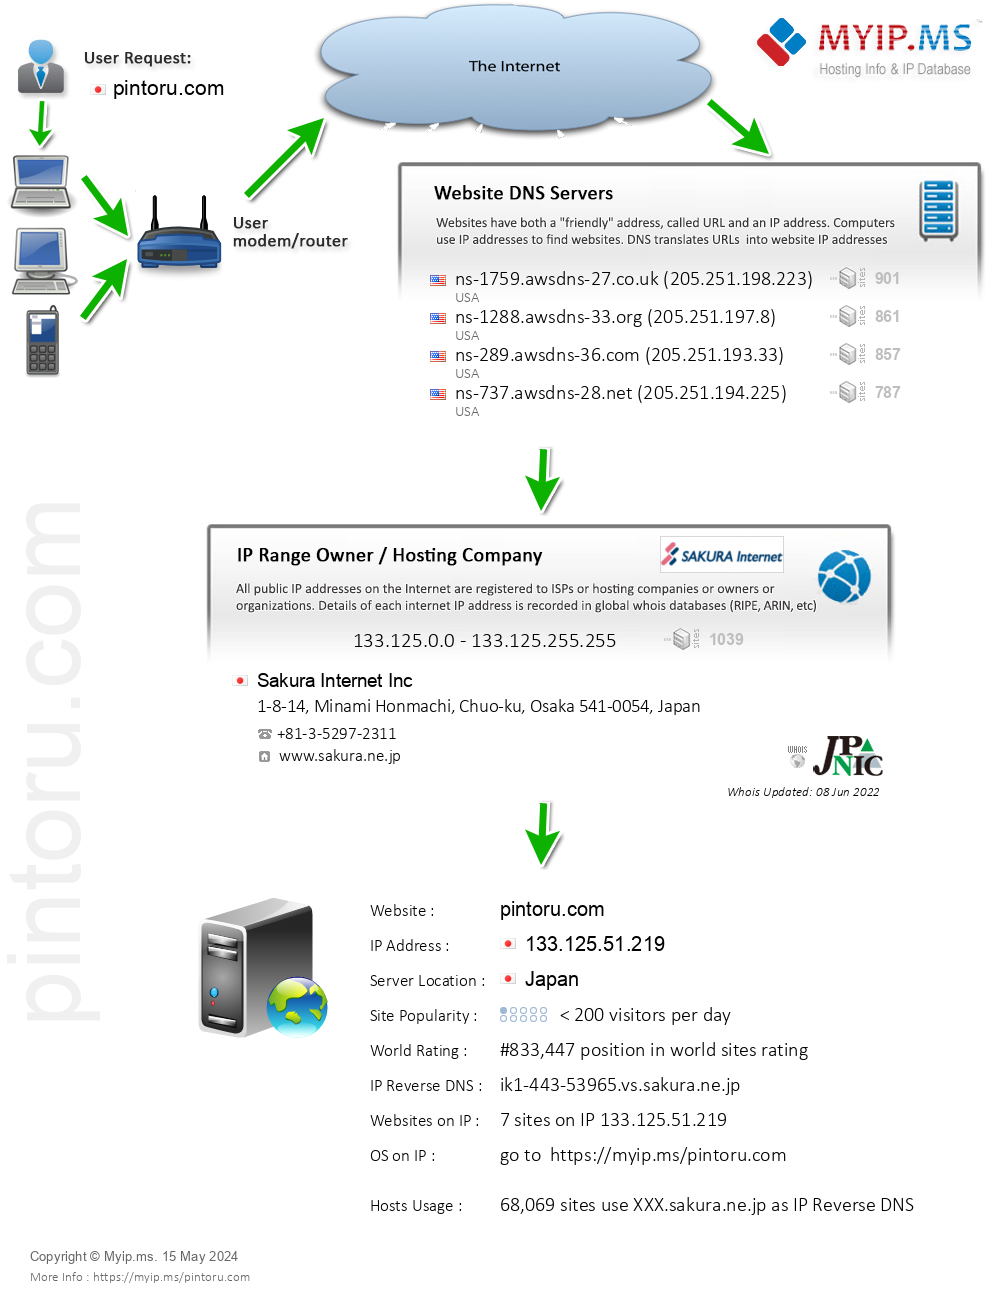 Pintoru.com - Website Hosting Visual IP Diagram